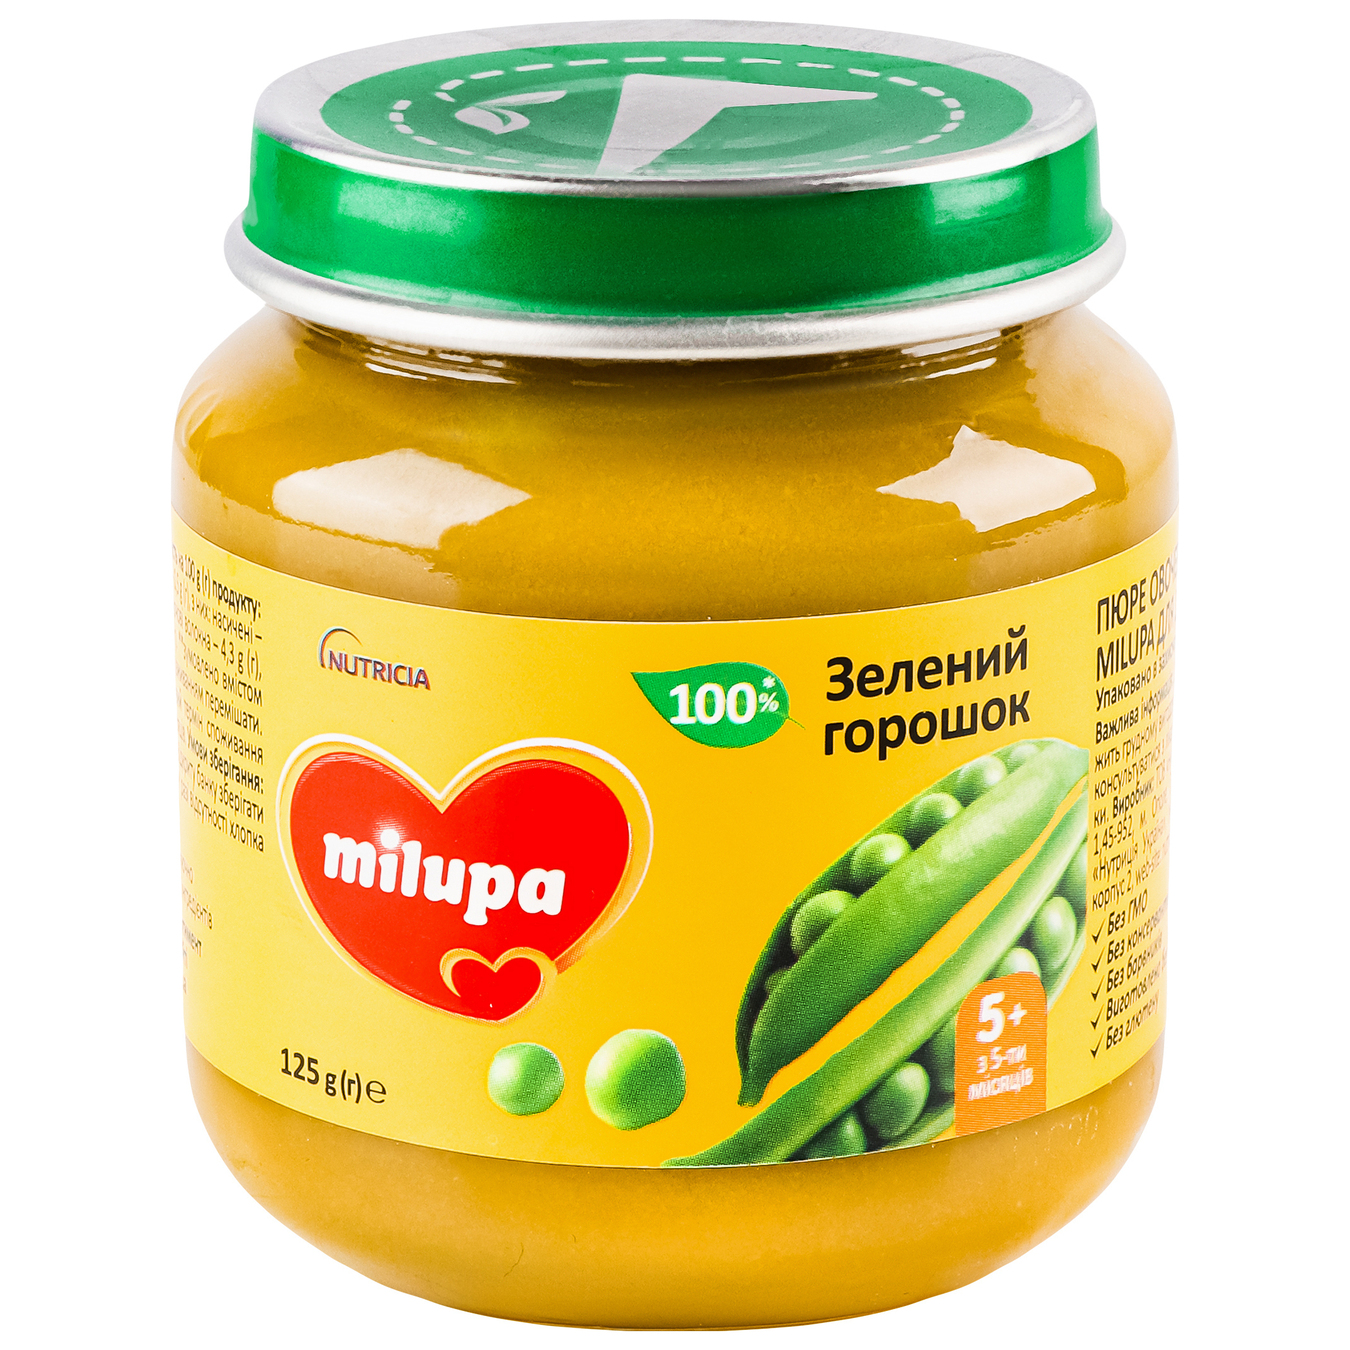 Milupa vegetable puree Green peas jar 125g 3